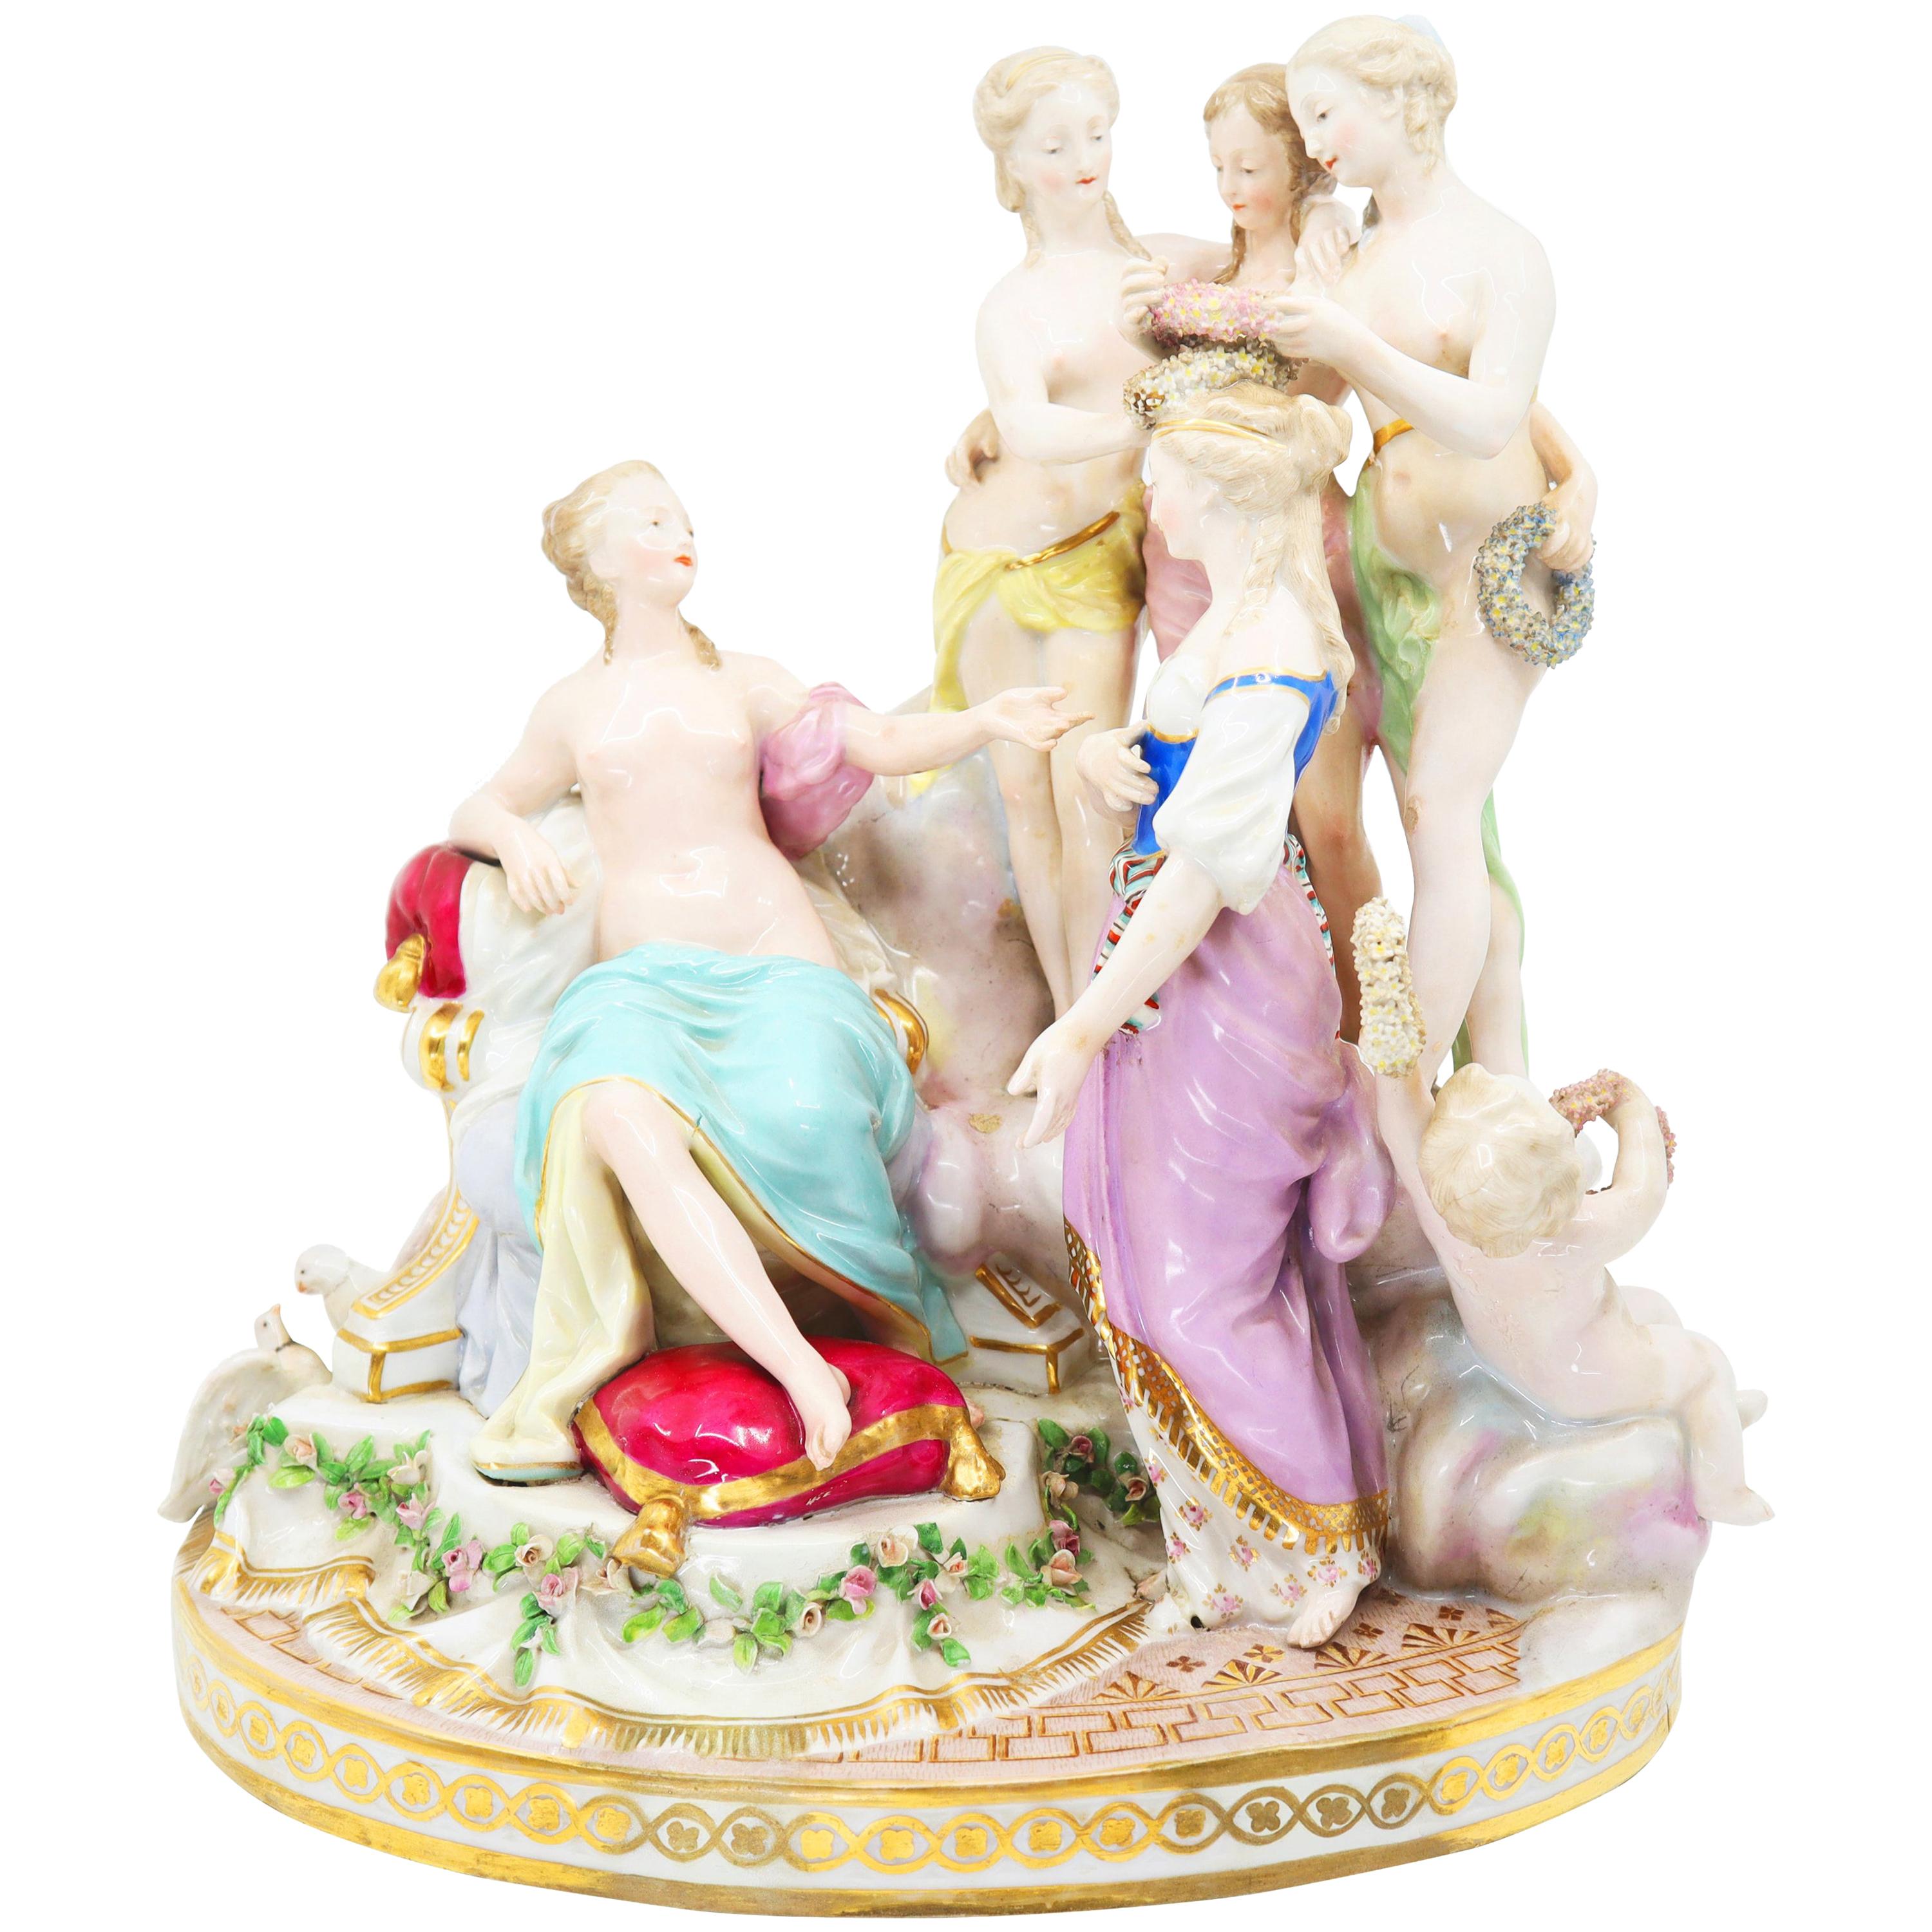 Porzellanfigurengruppe von Venus und Museen Samson 19. Jahrhundert, Sevres Französisch